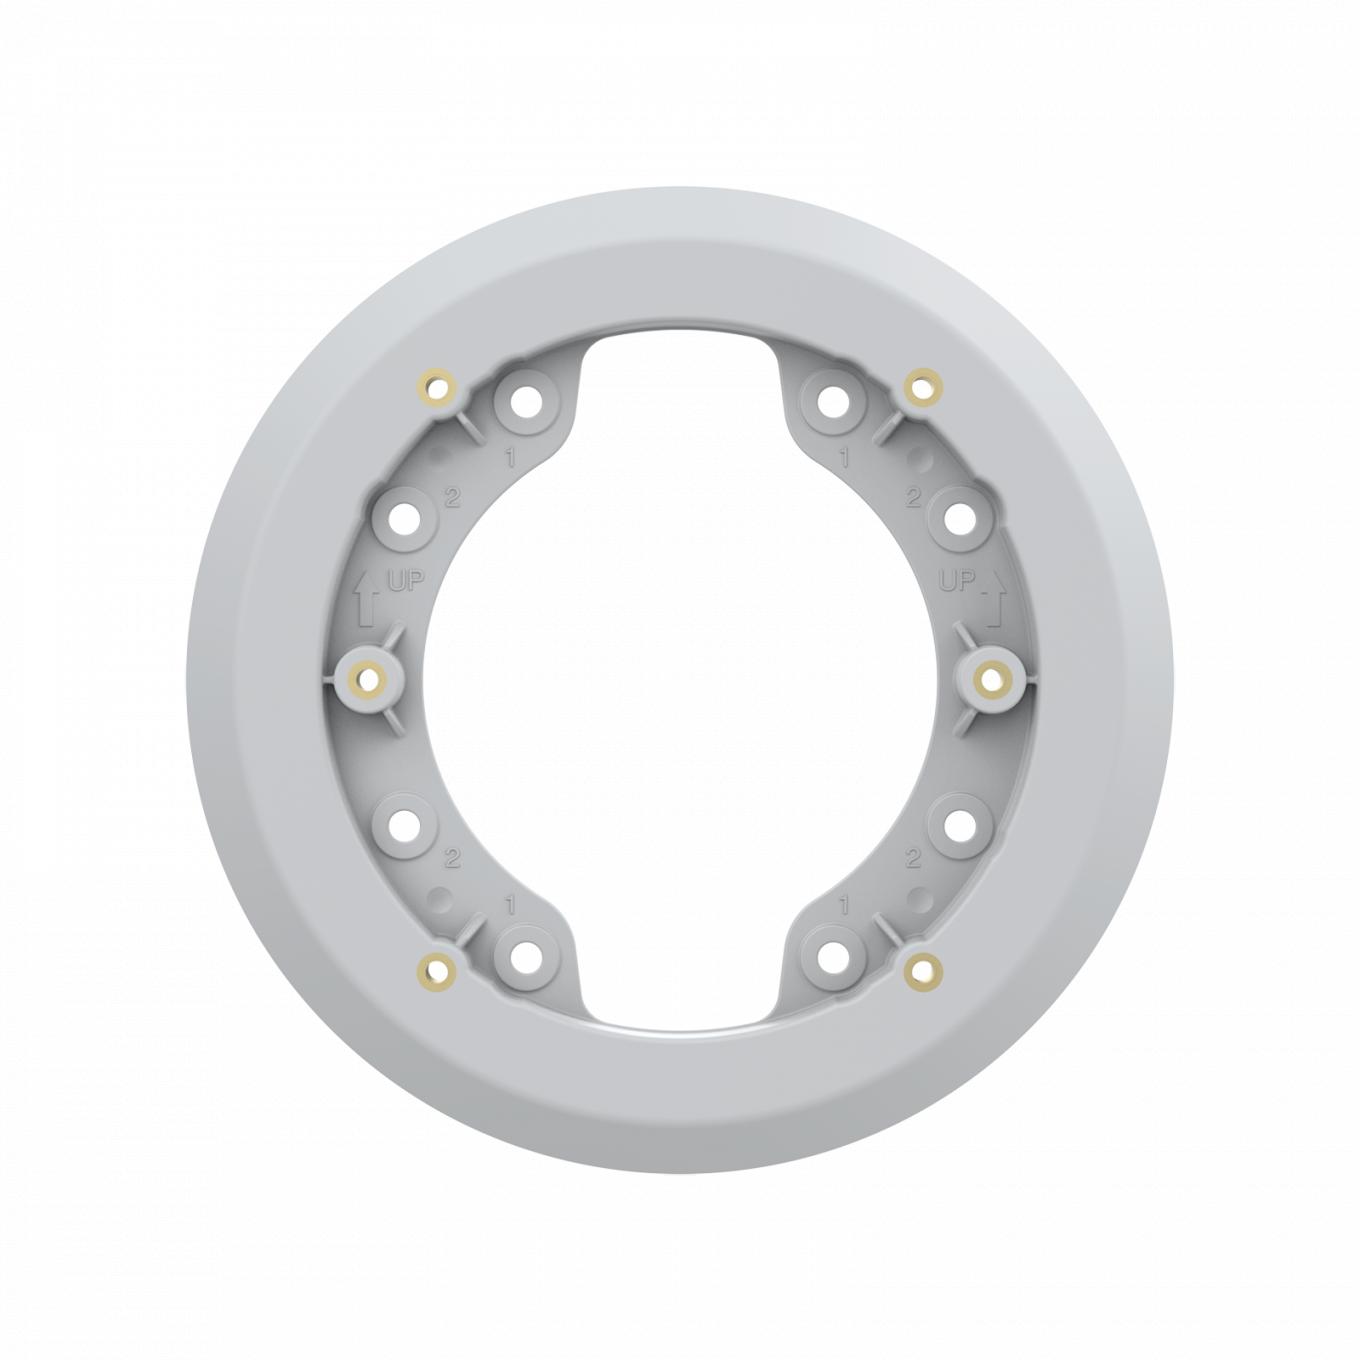 AXIS TP1601 Adapter Plate-Zubehör, weiß, von vorn.